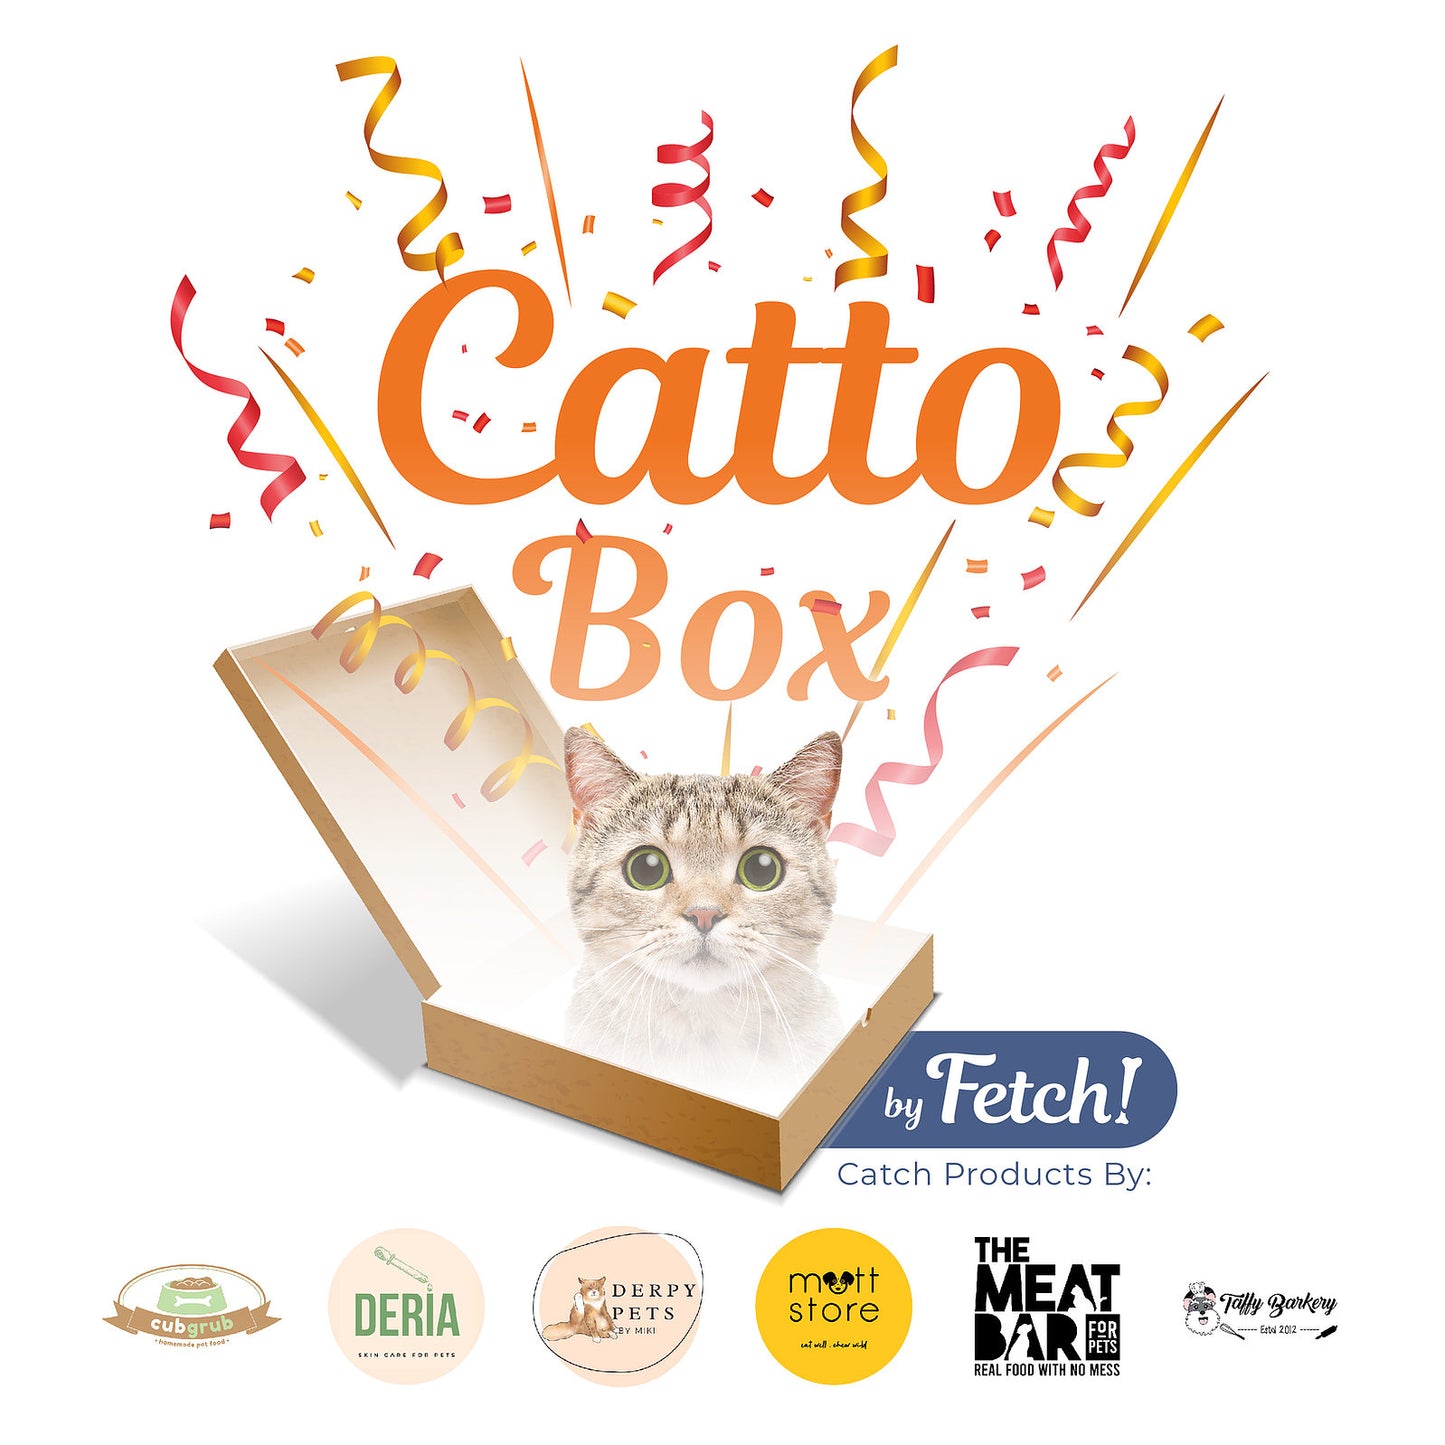 Catto Surprise Box